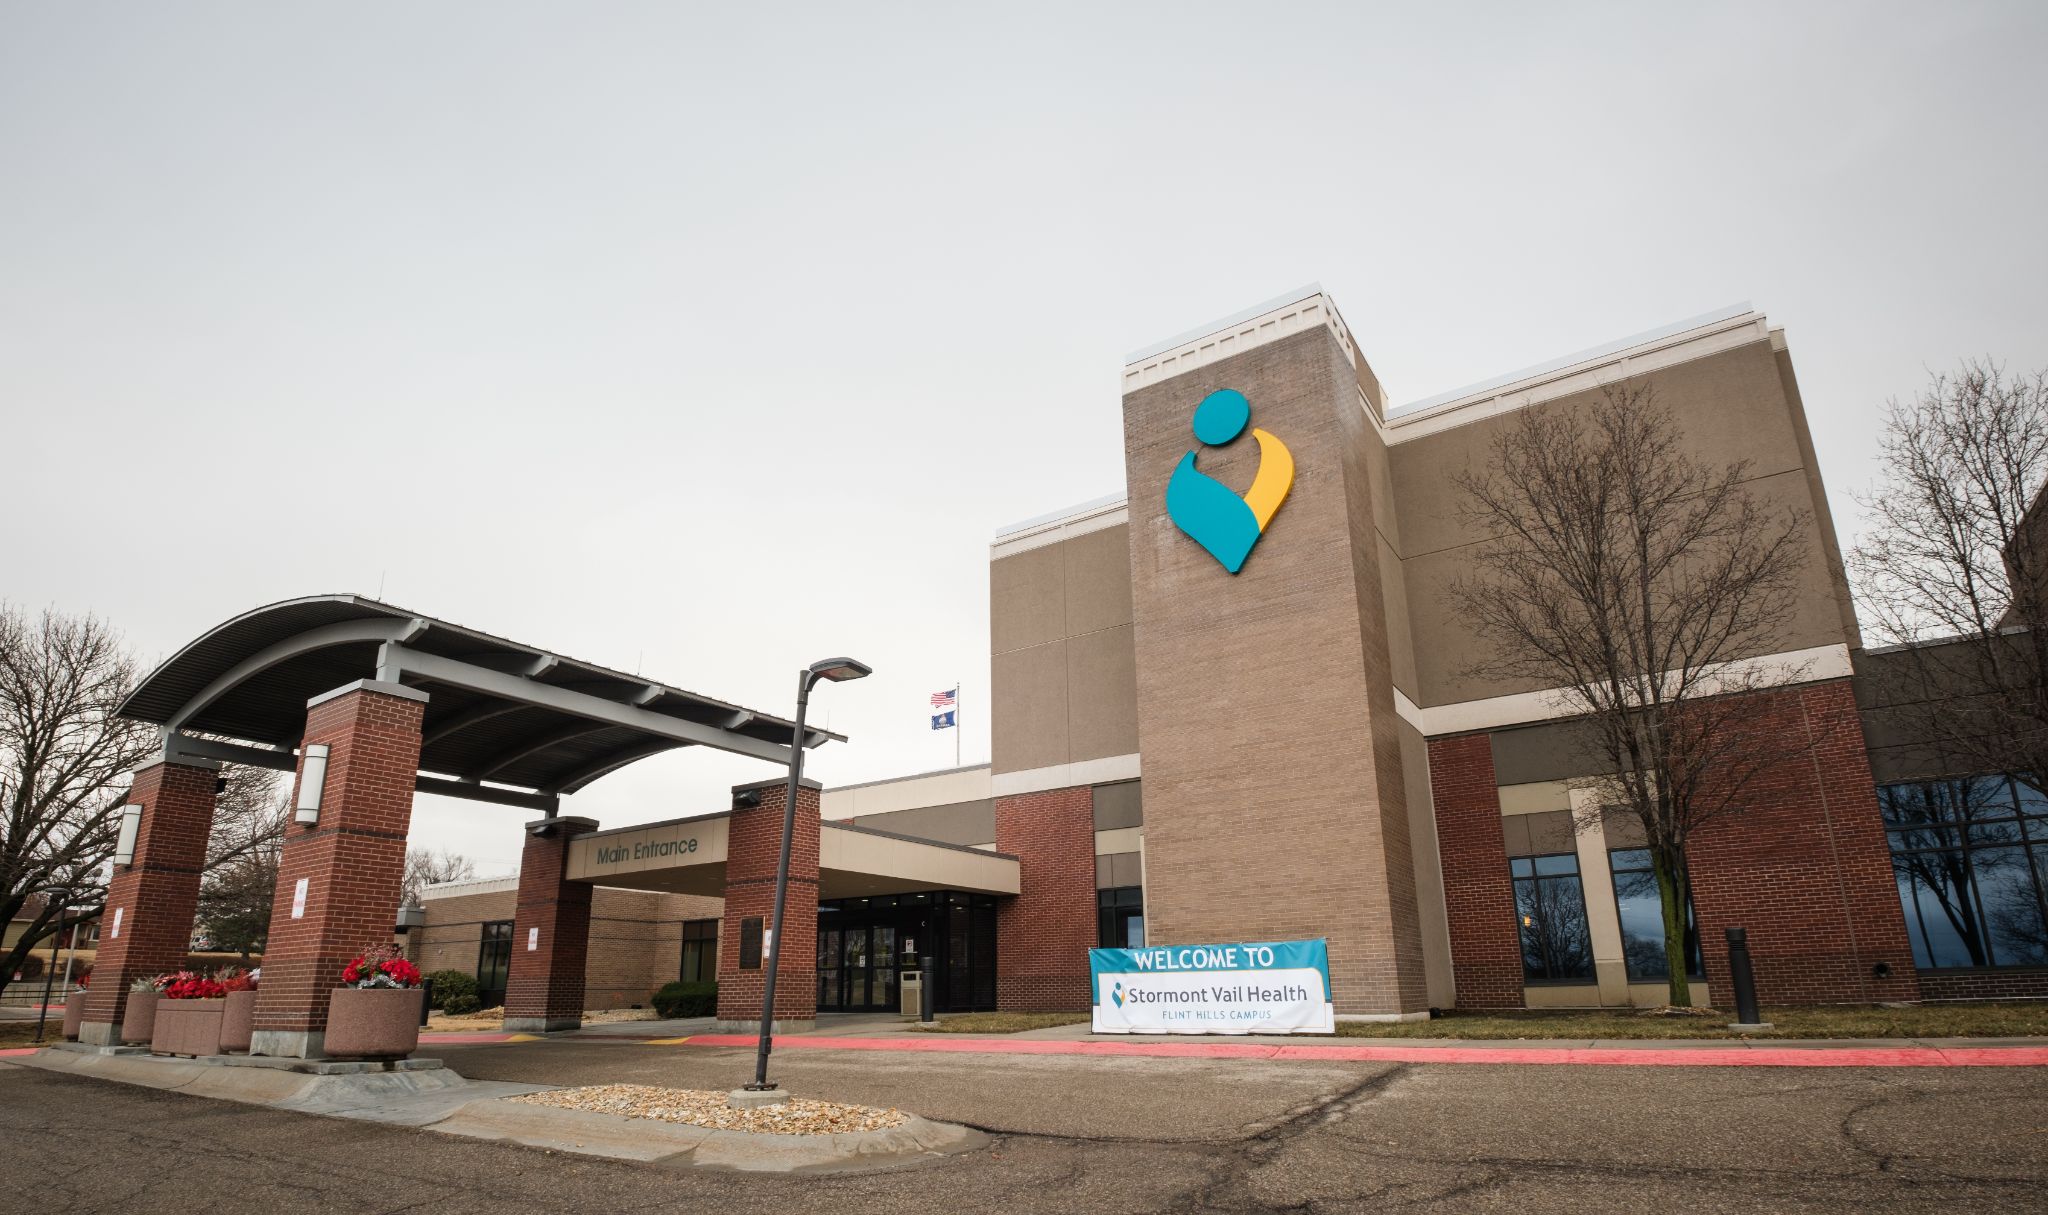 点击斯托蒙特韦尔健康中心在Geary社区医院的投资:枢纽市的重要生命线, 堪萨斯社区幻灯片照片开放